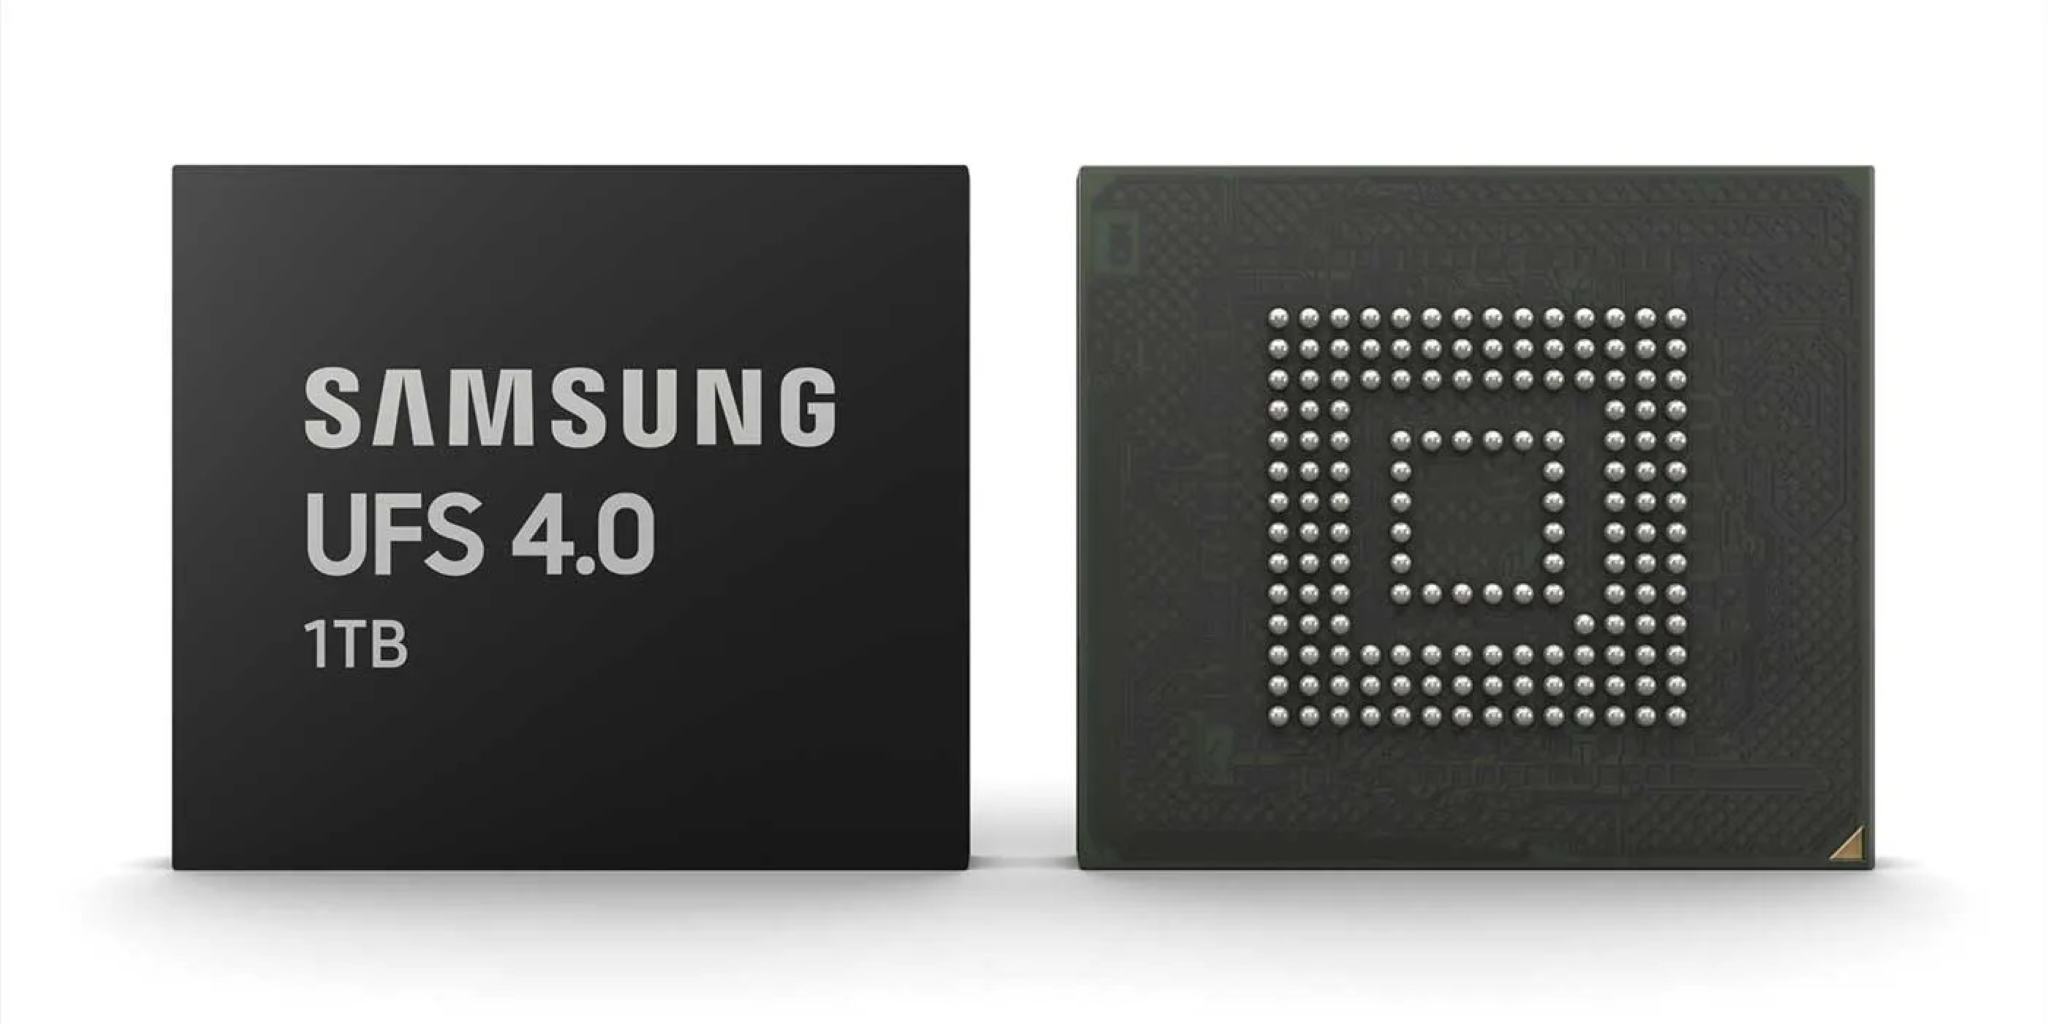 Samsung công bố bộ nhớ chuẩn UFS 4.0: Đọc tuần tự 4200MB/s và tiết kiệm điện hơn 46% so với UFS 3.1